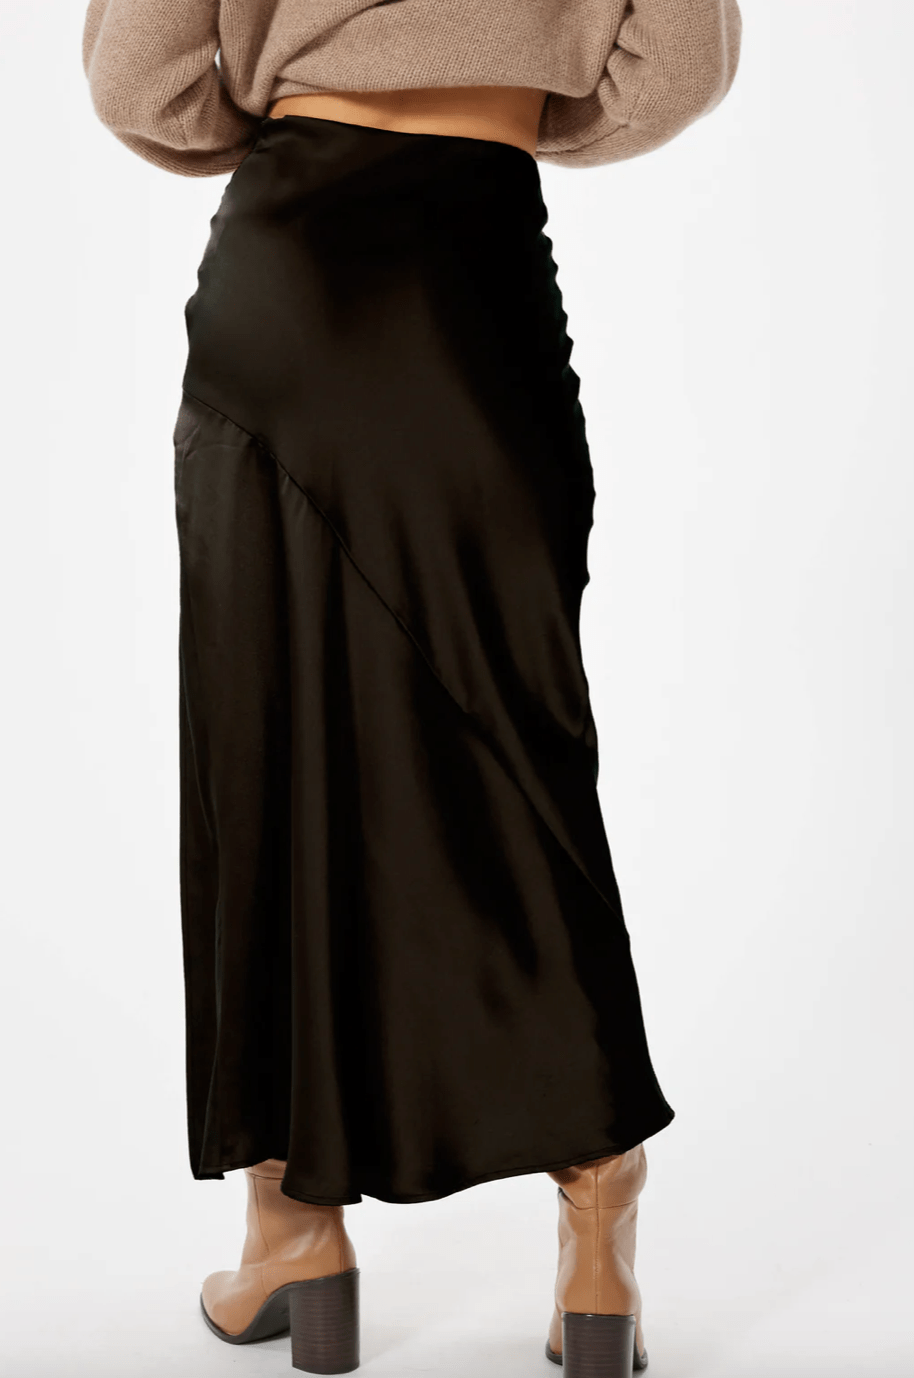 Sophie Rue Manhattan Skirt in Black - Estilo Boutique